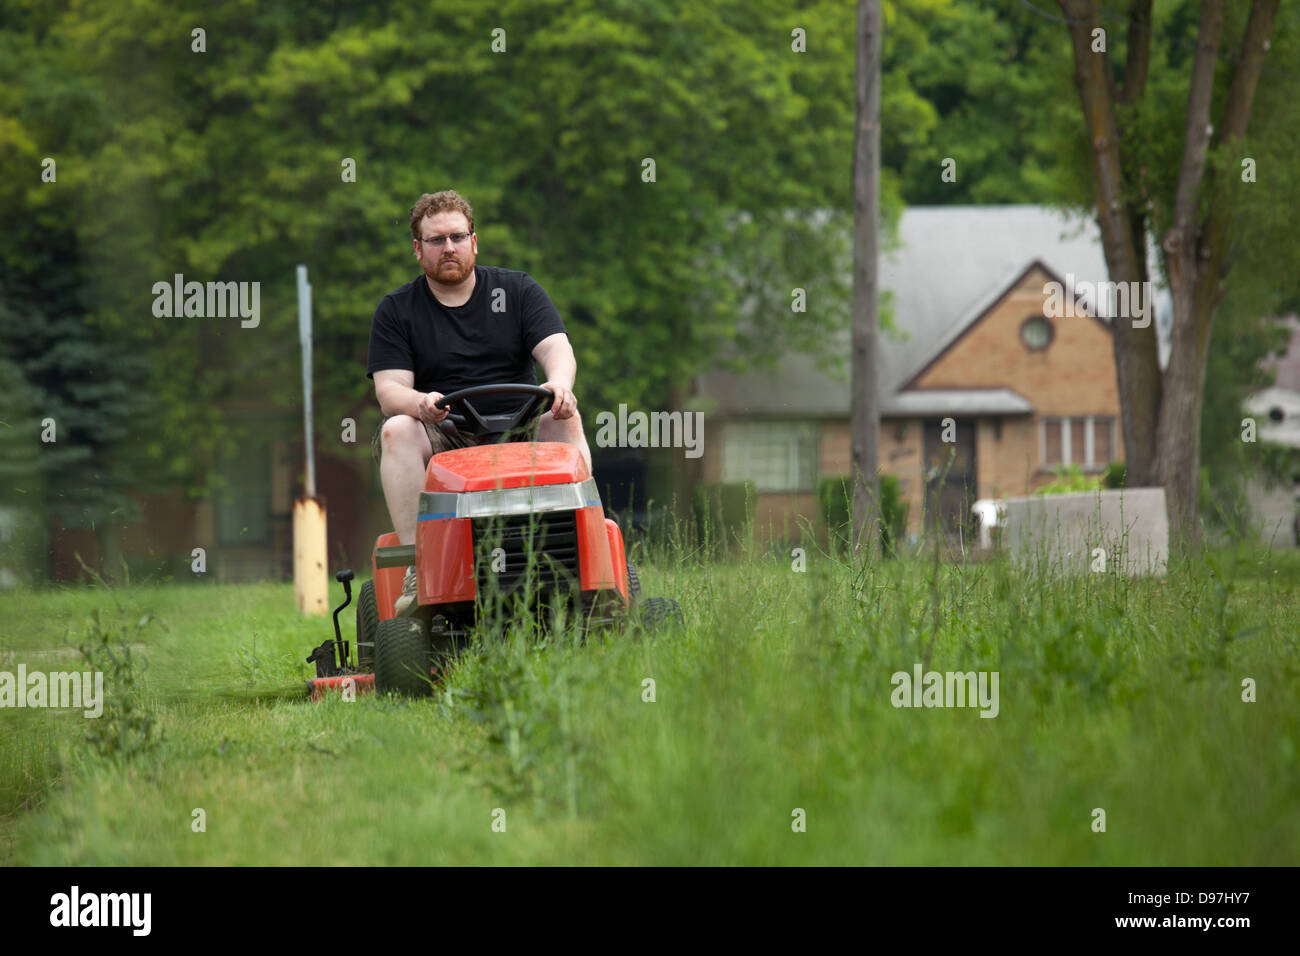 Die Detroit-Mäher-Bande, eine informelle Gruppe von Freiwilligen, schneidet den Rasen in den Parks, die die Stadt nicht mehr leisten kann. Stockfoto